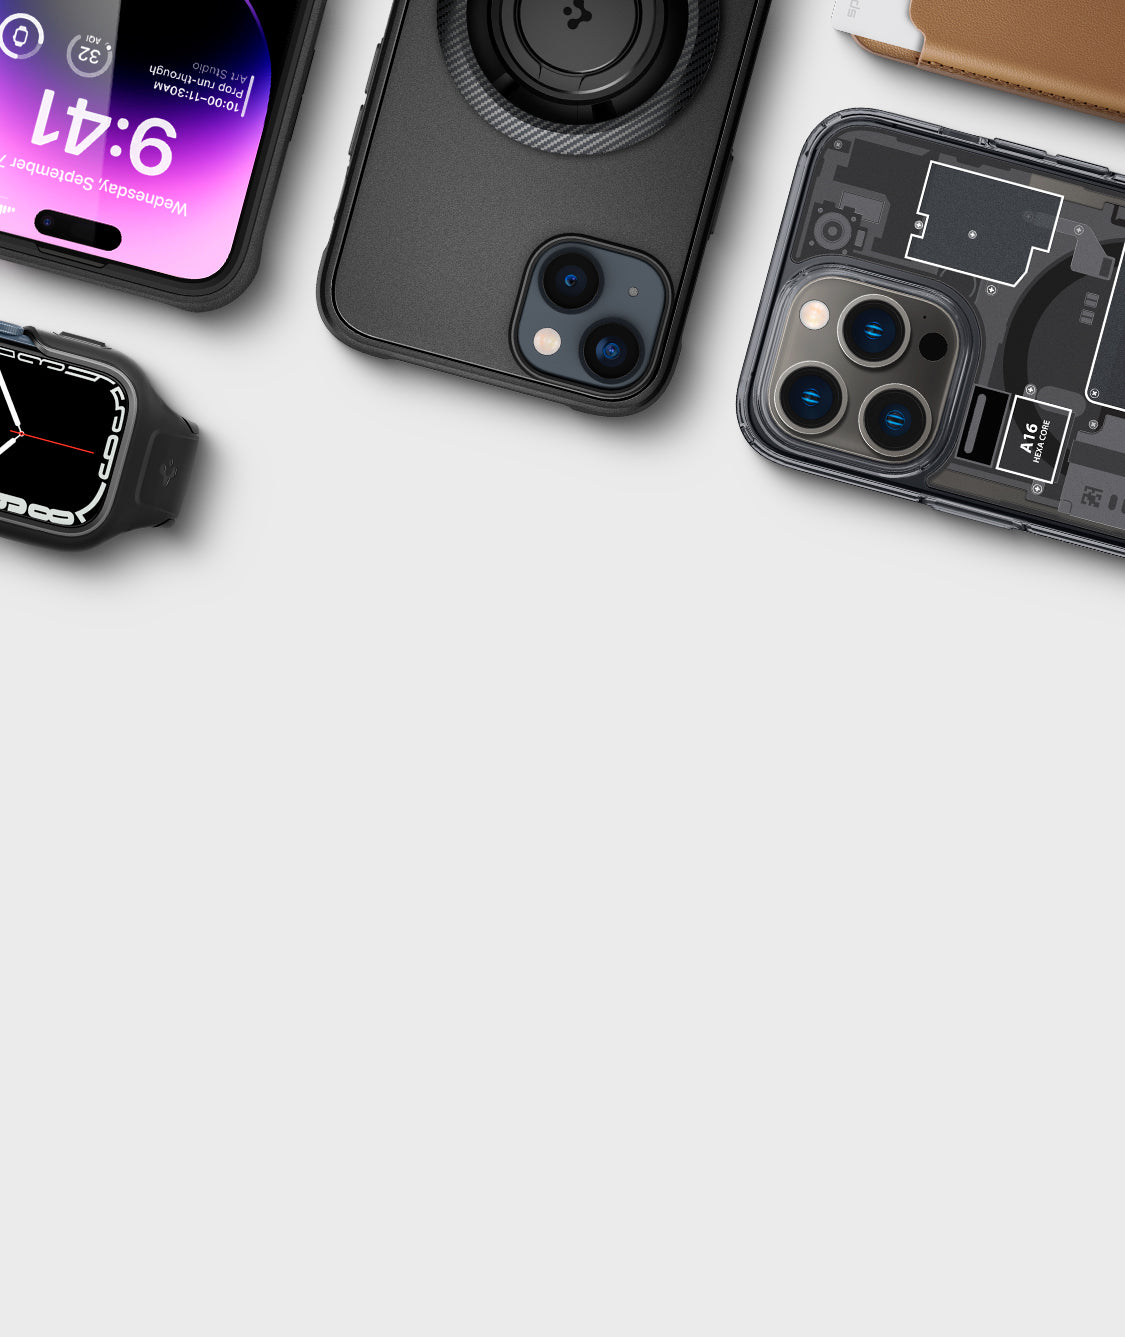 iPhone 13 Pro Max Case Ultra Hybrid - Spigen.com Sierra Blue / in Stock